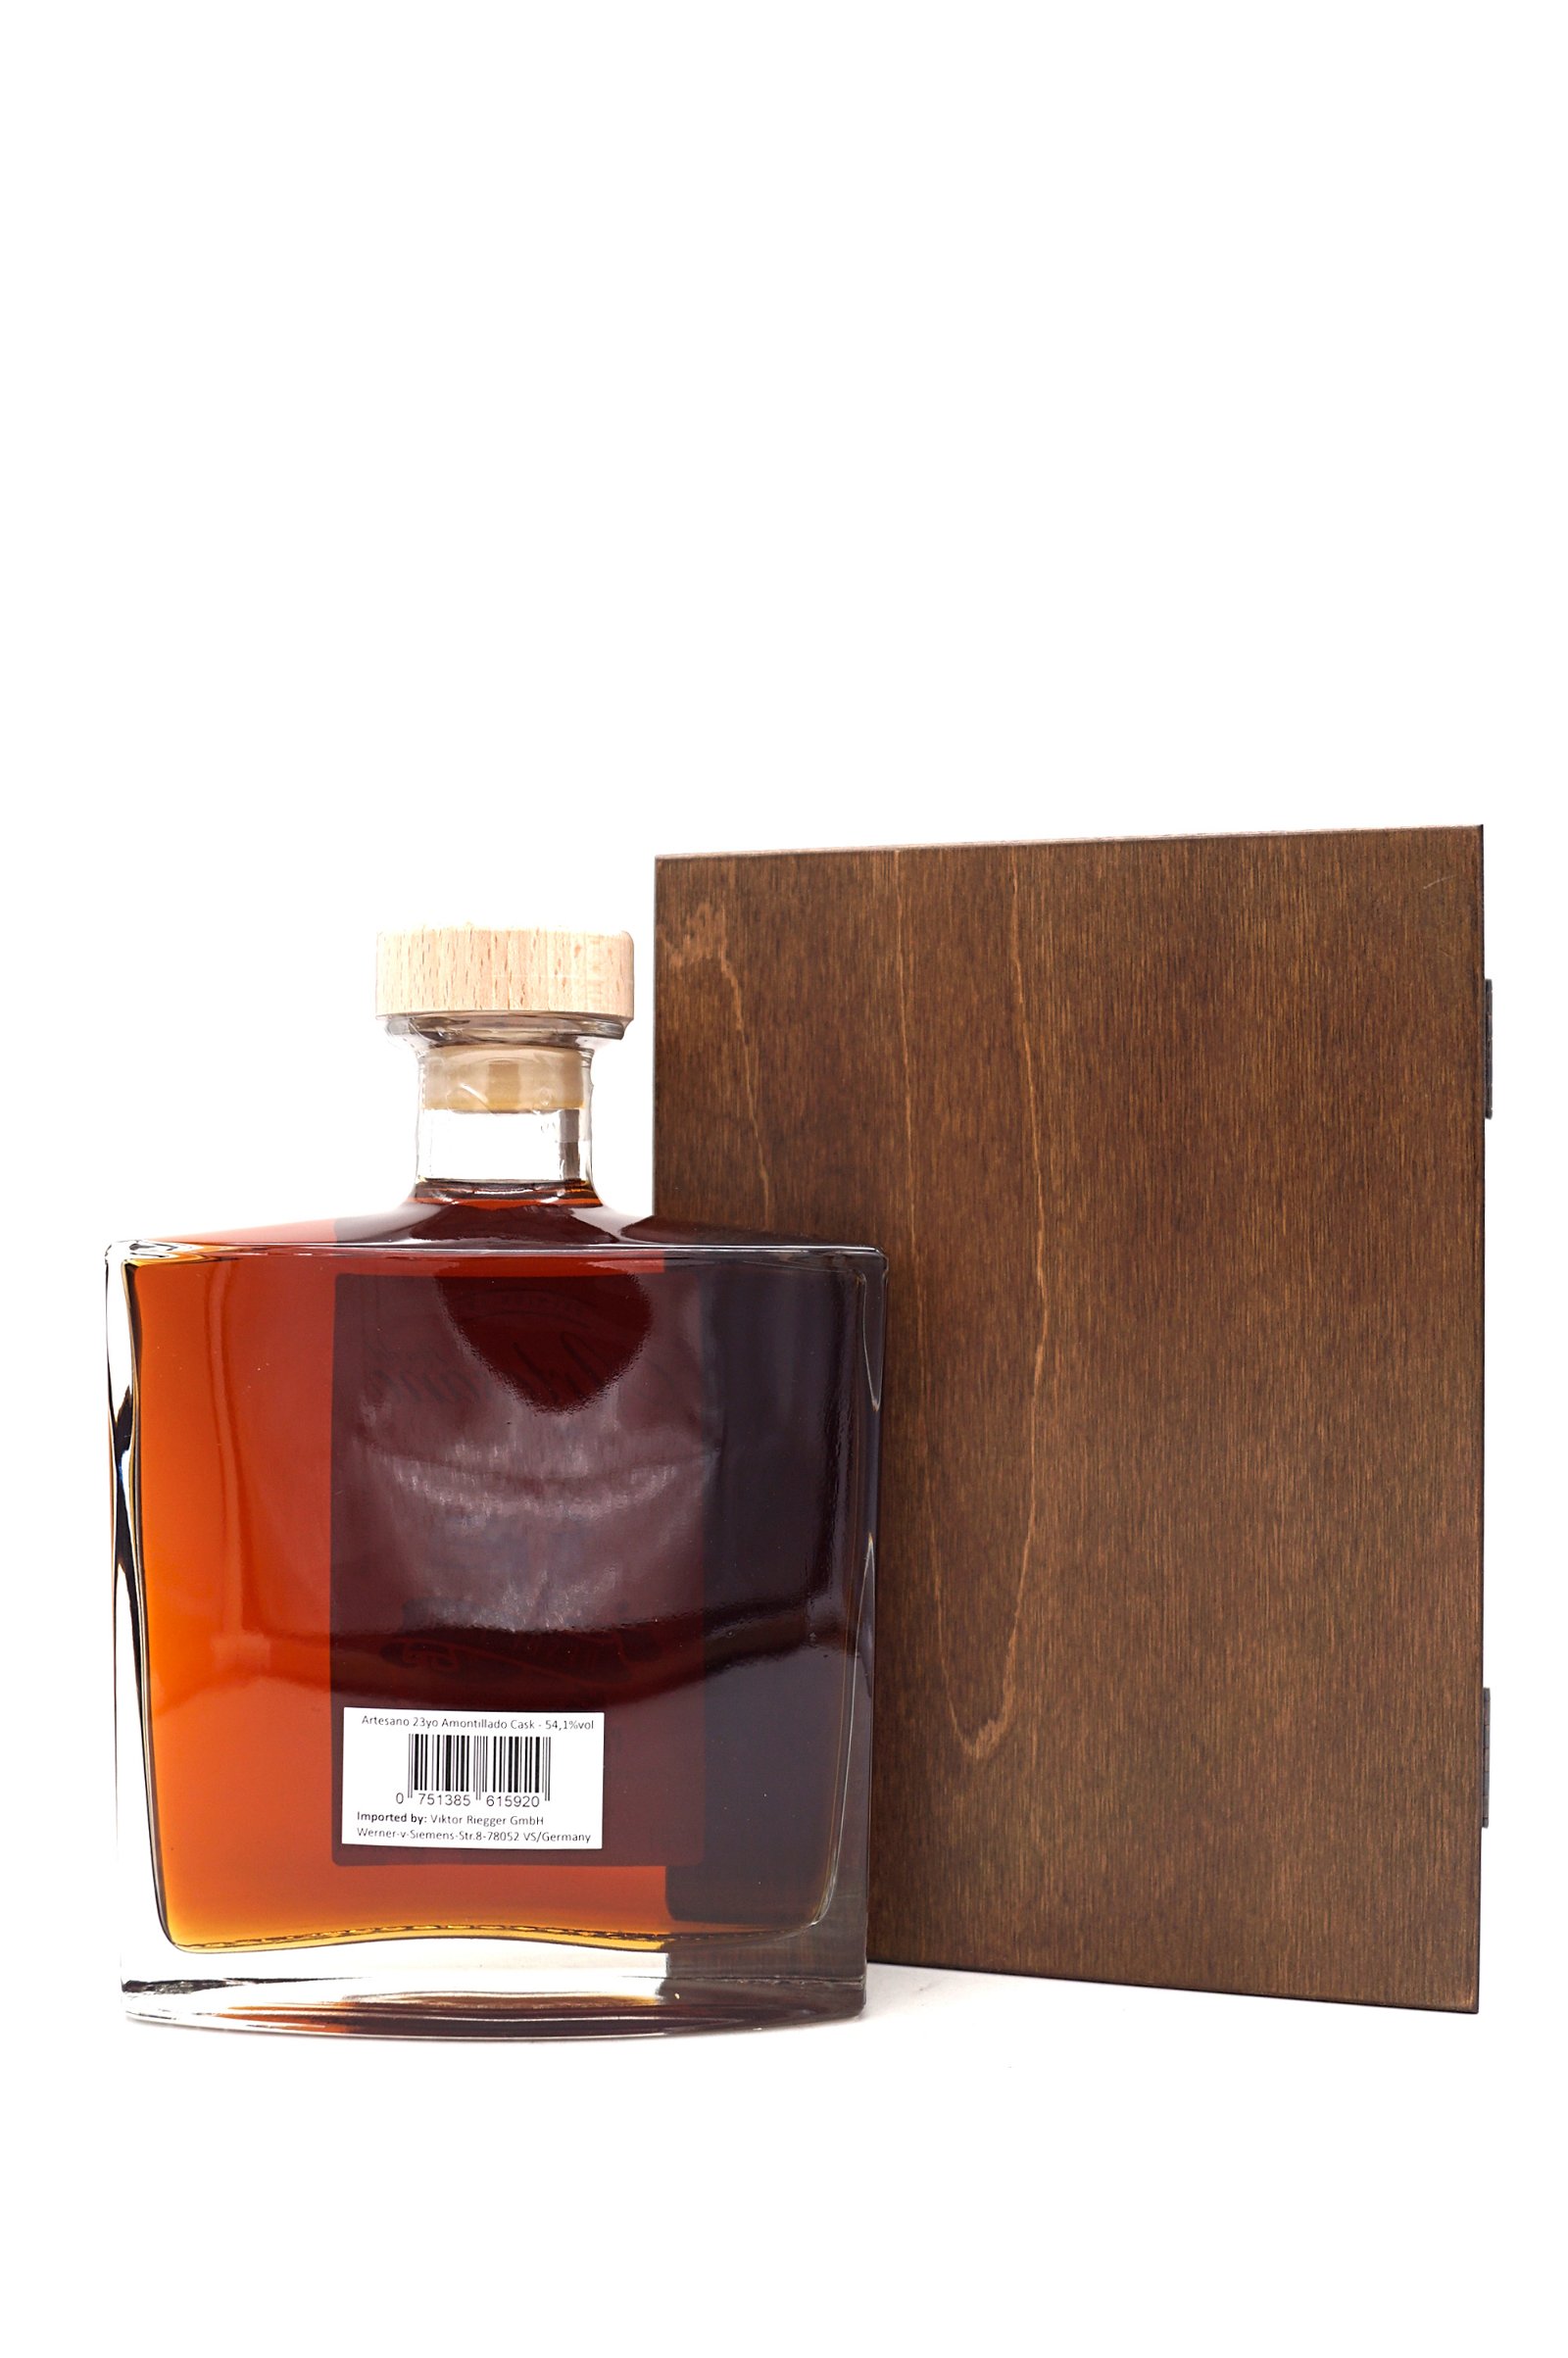 El Ron del Artesano 23 Jahre Panama Rum Amontillado Sherry Cask Strength Fass Nr. 110-16